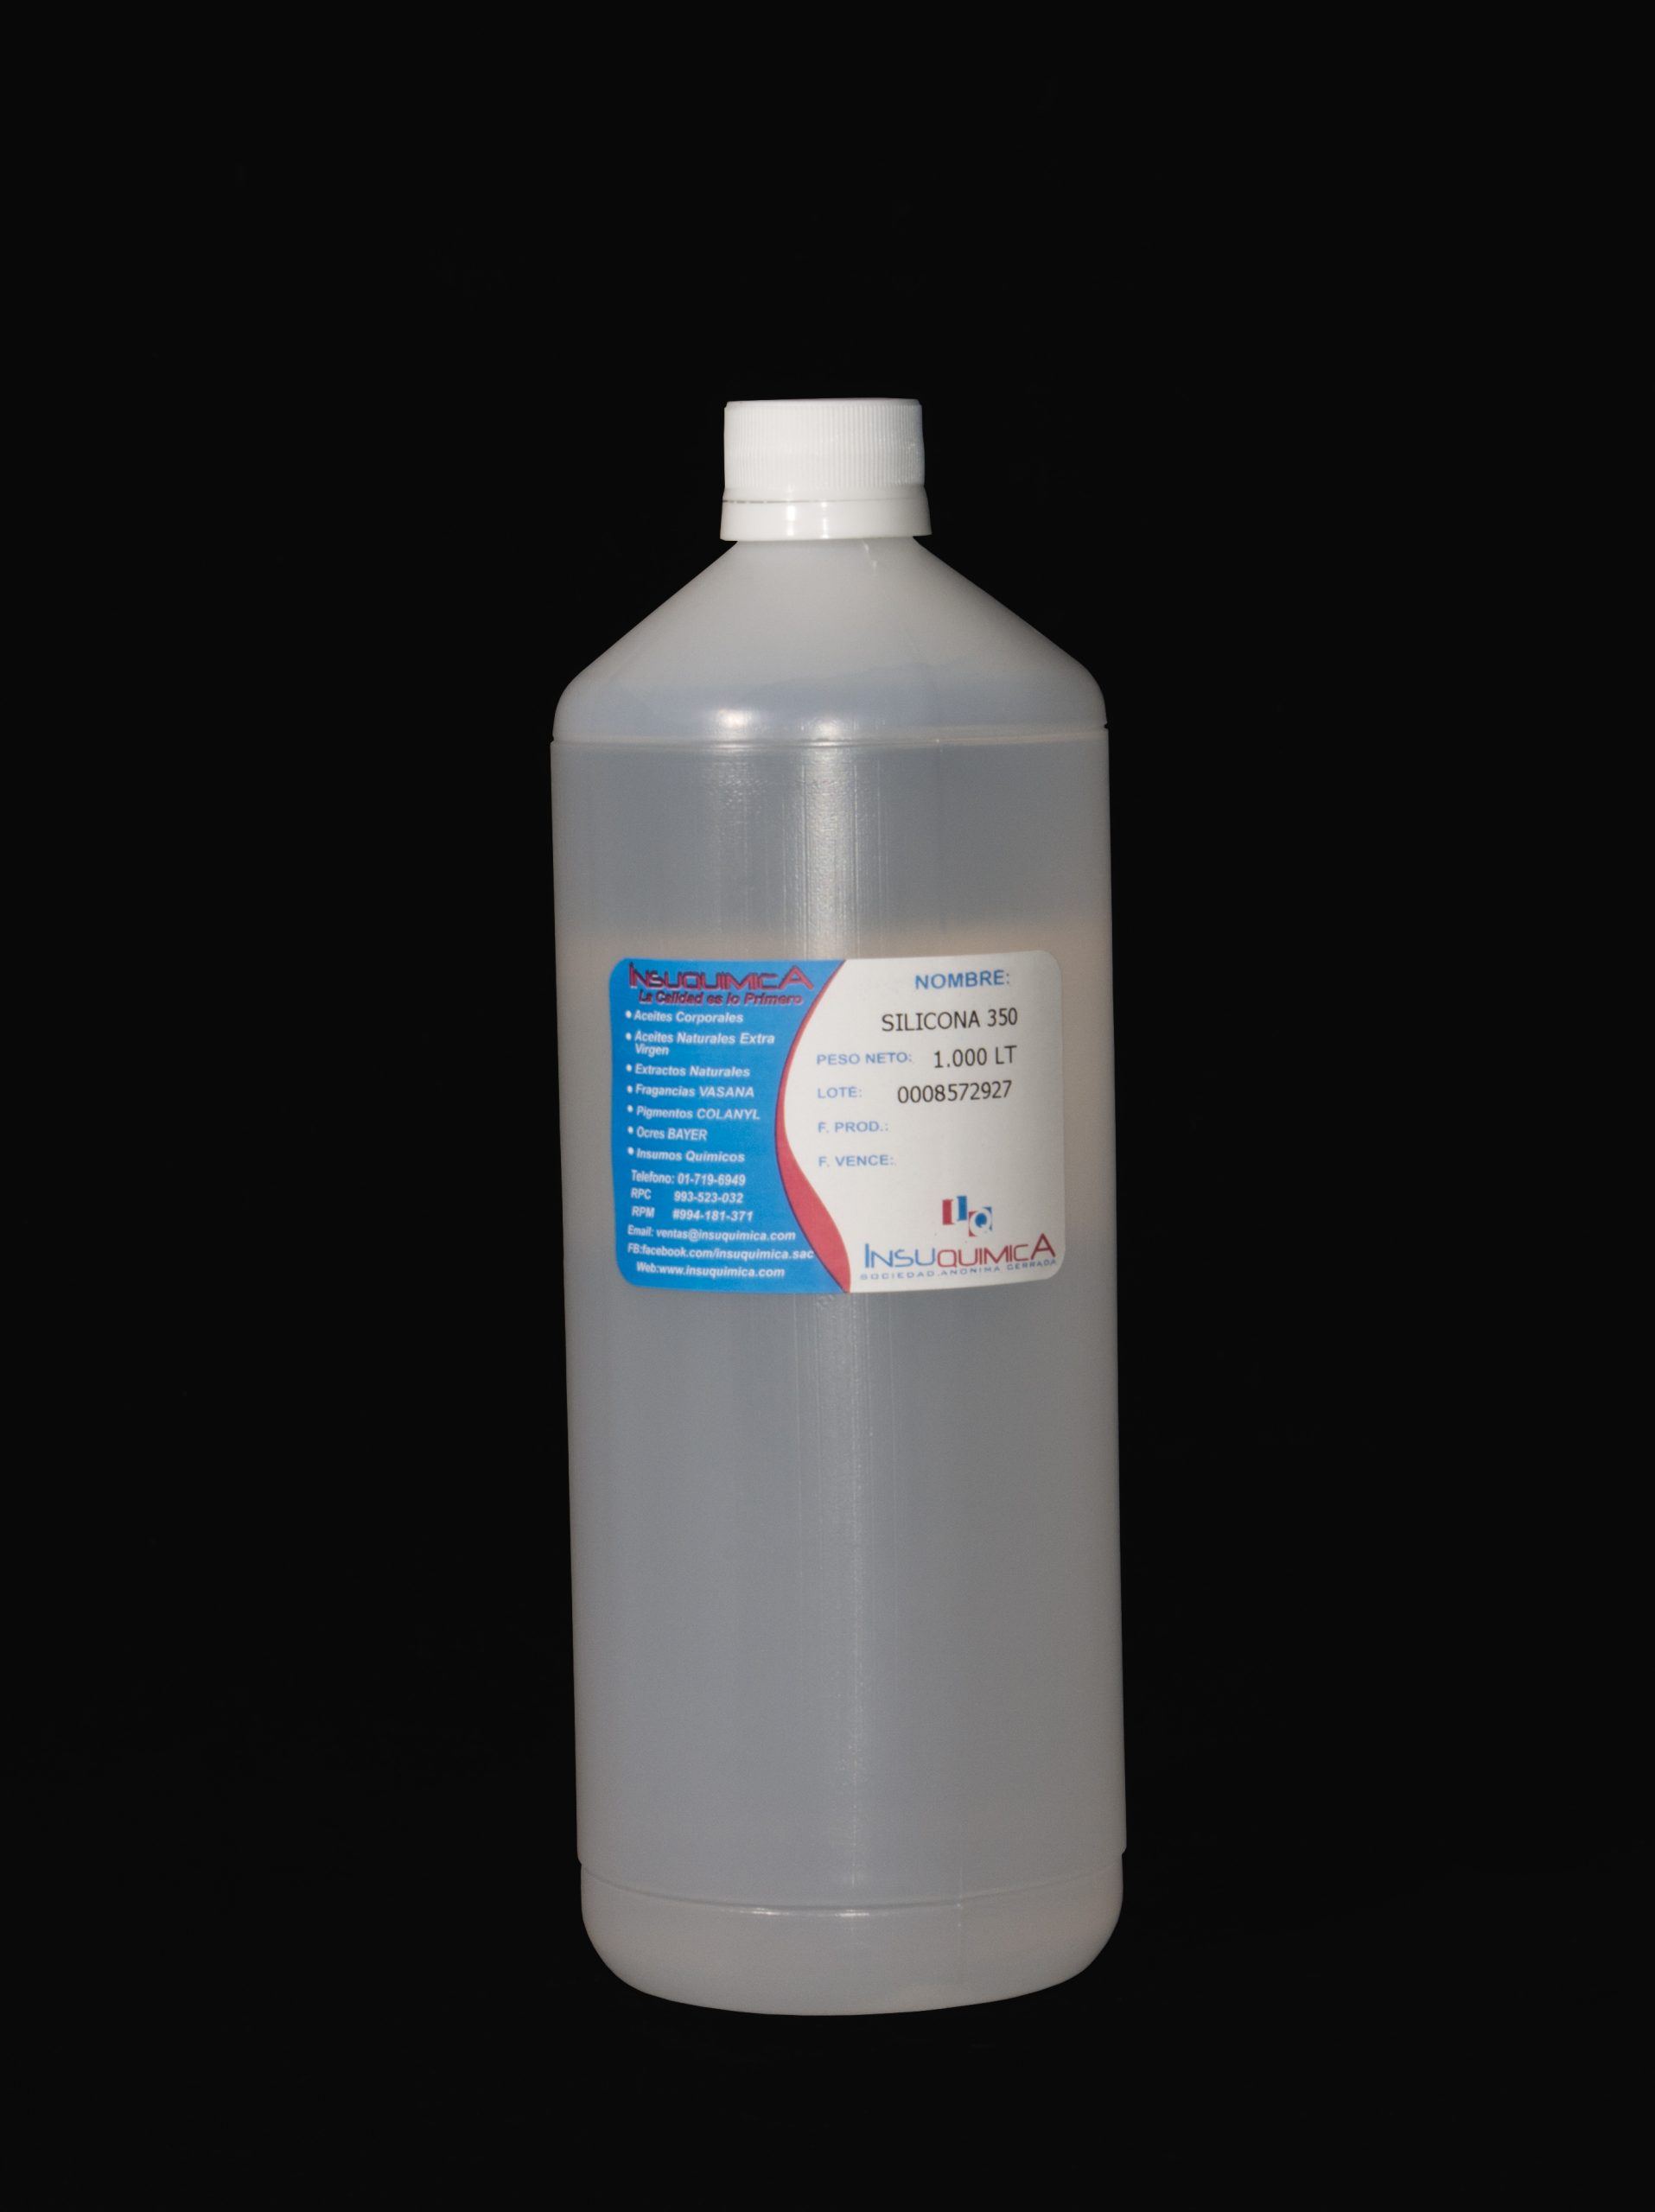 Aceite de Silicona 350 - Químicos Mandarín